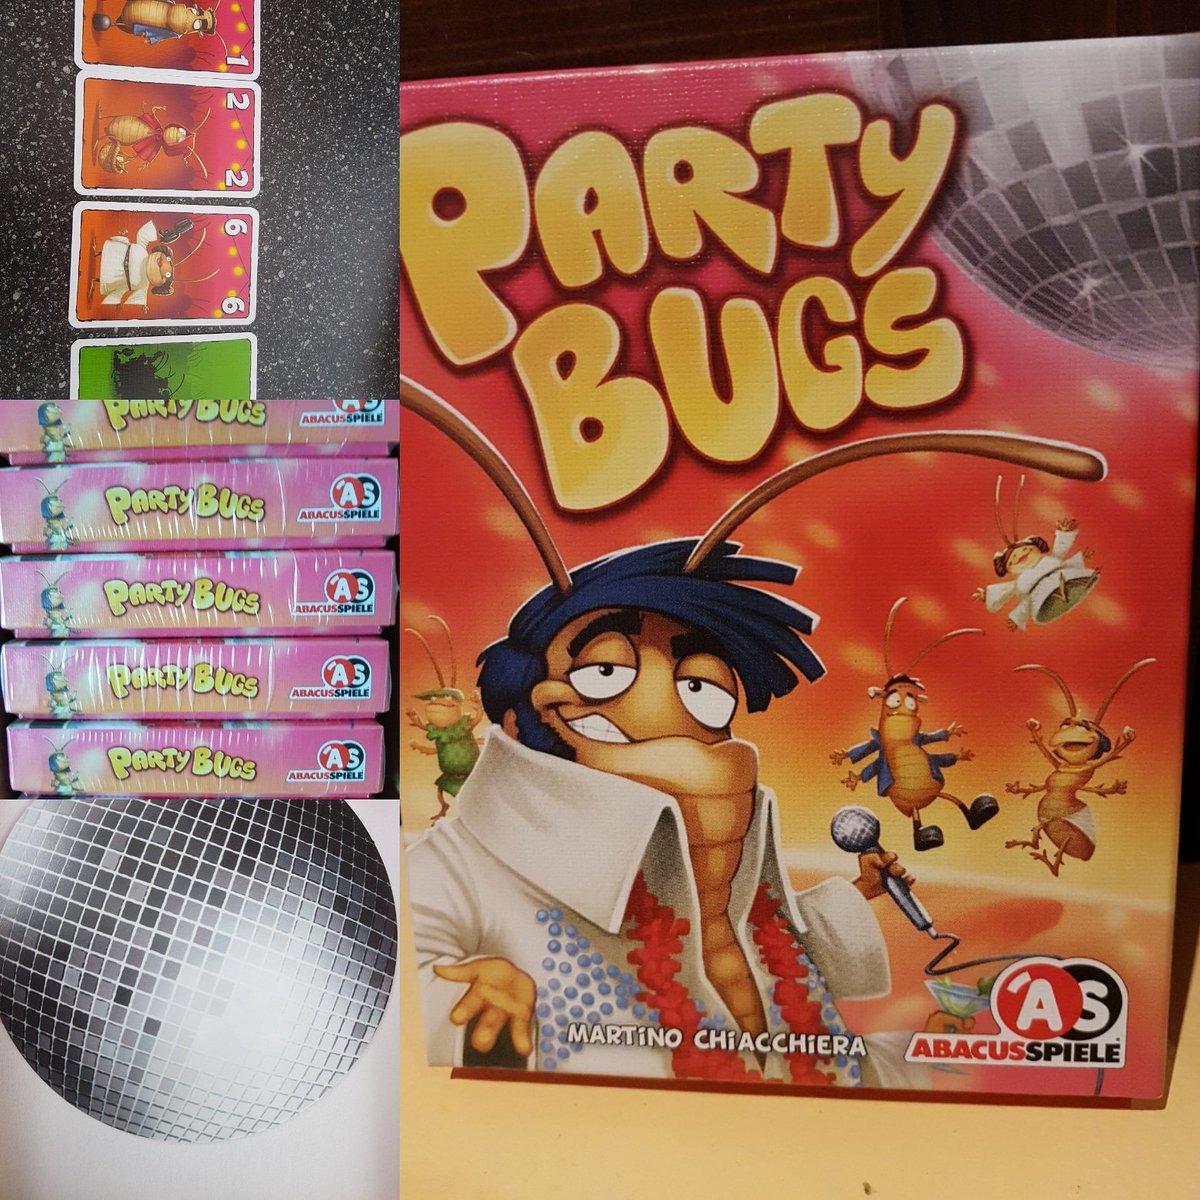 Party Bugs, le jeu du mois! Un jeu de cartes avec des dessins hilarants, des règles simples à comprendre et des parties super sympa.
#lepetitcaribou #abacusspiele #partybugs #jeudumois #jeudecartes #jeusupersympa